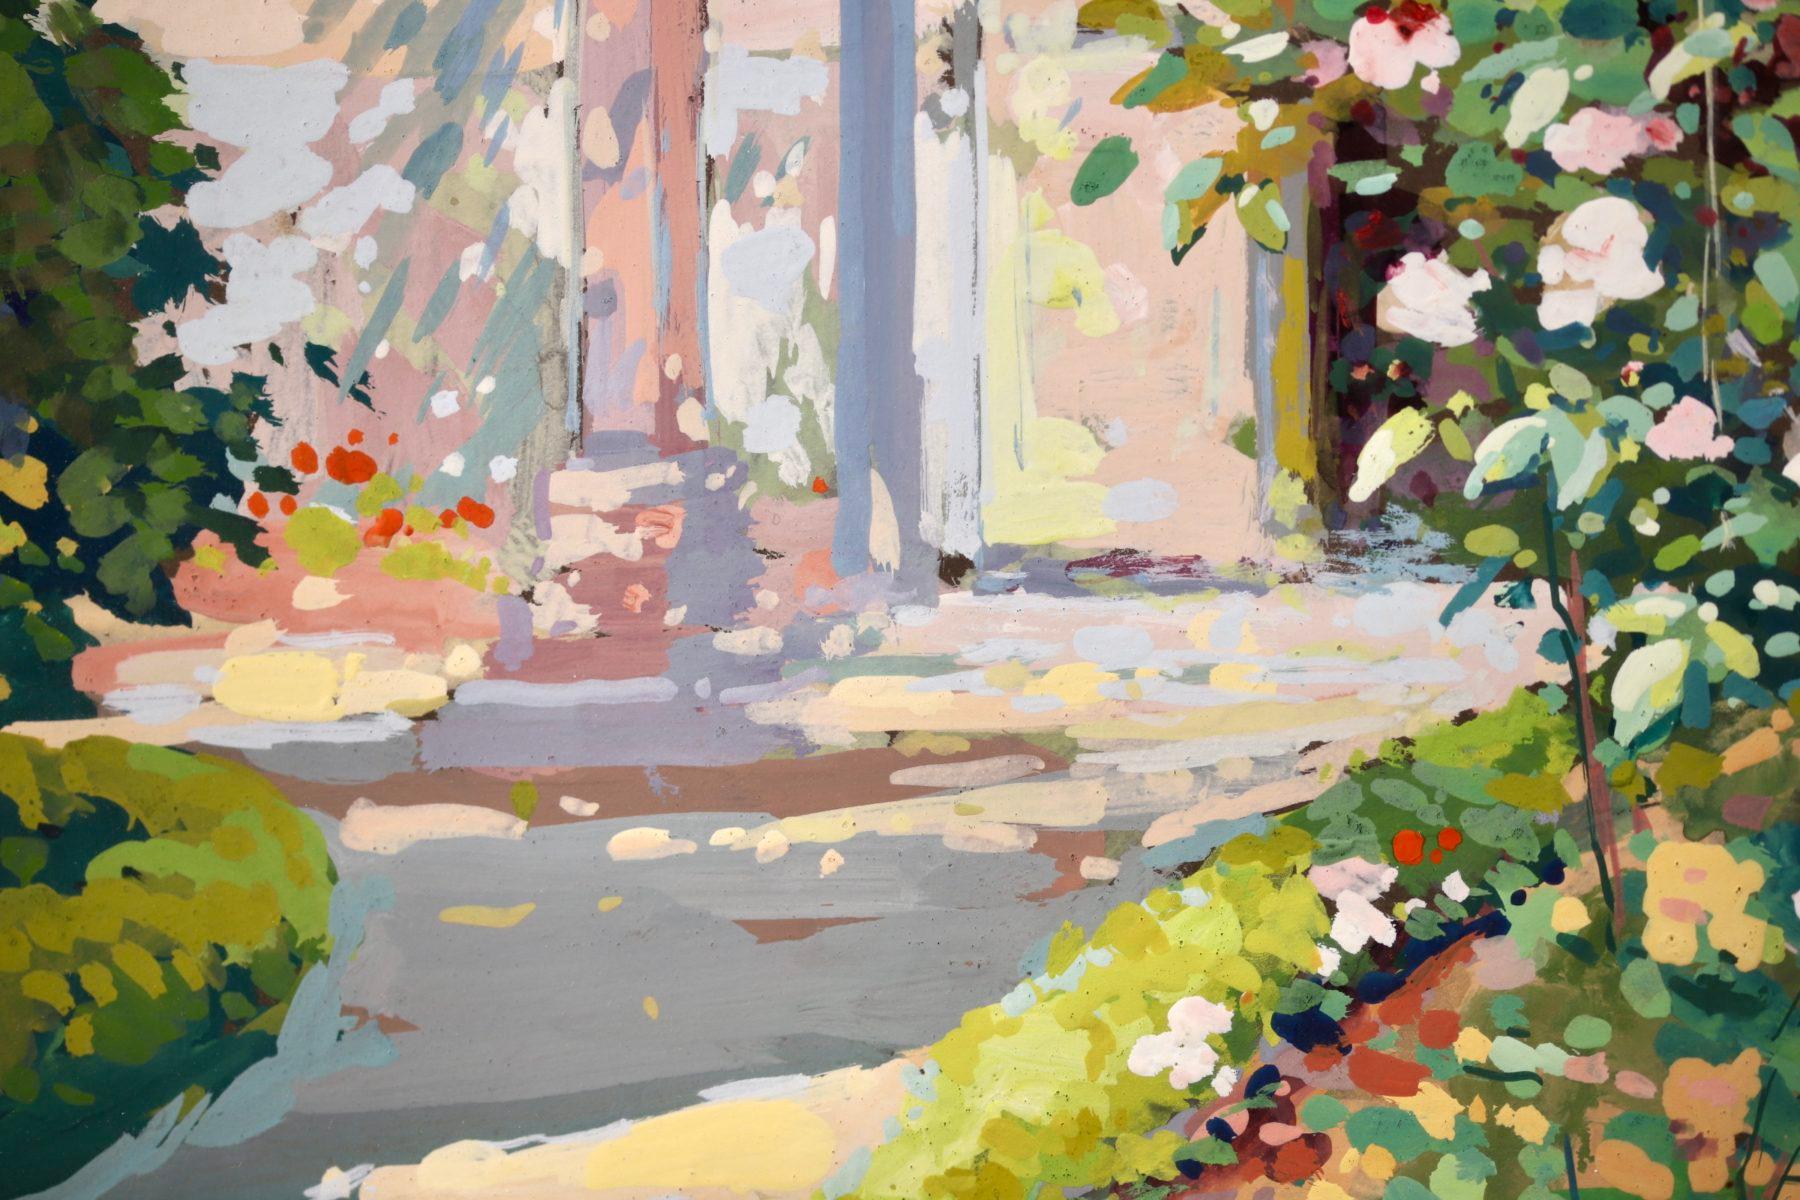 Un superbe paysage à la gouache sur carton datant de 1940, réalisé par le peintre impressionniste français Edouard Leon Cortes. L'œuvre est une magnifique représentation du jardin de l'artiste à Lagny par une journée d'été chaude et ensoleillée. Les